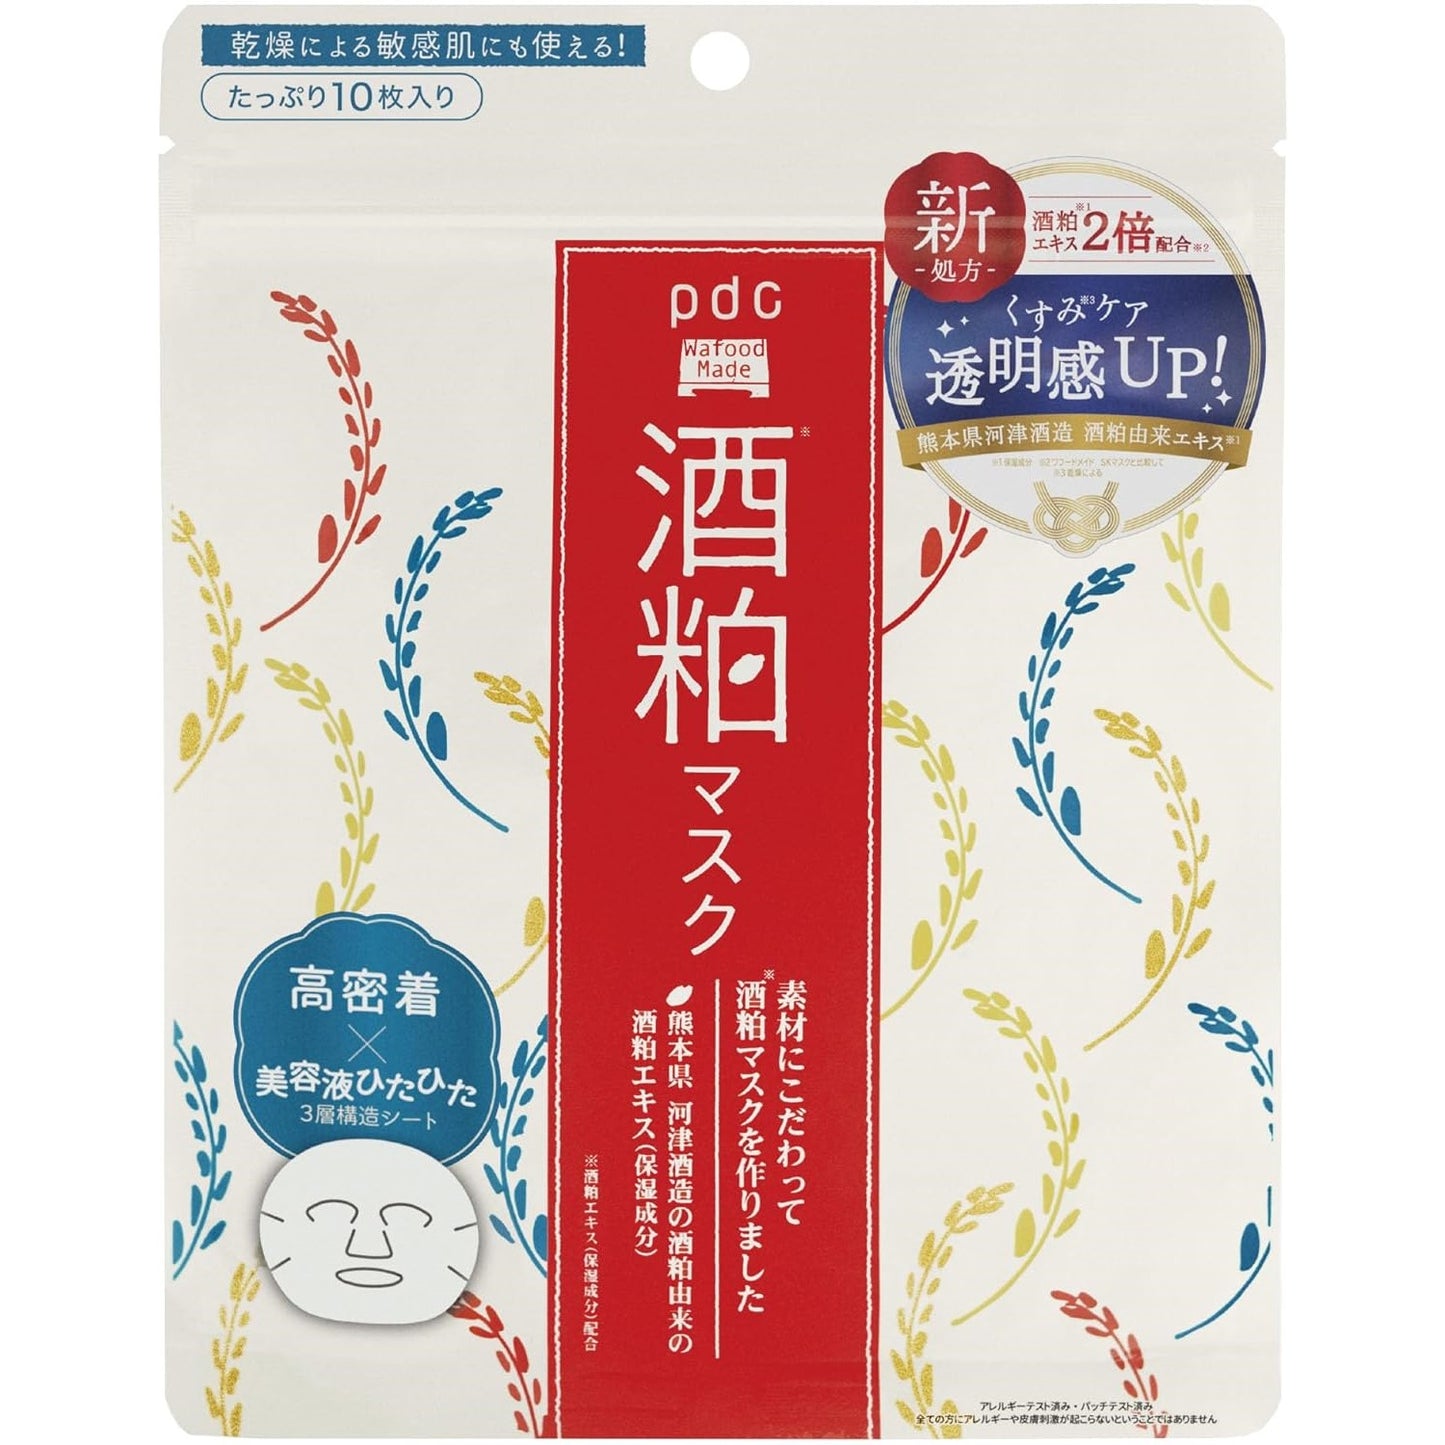 PDC Wafood Made Sake Lees Face Mask 10pcs (Made in Japan)